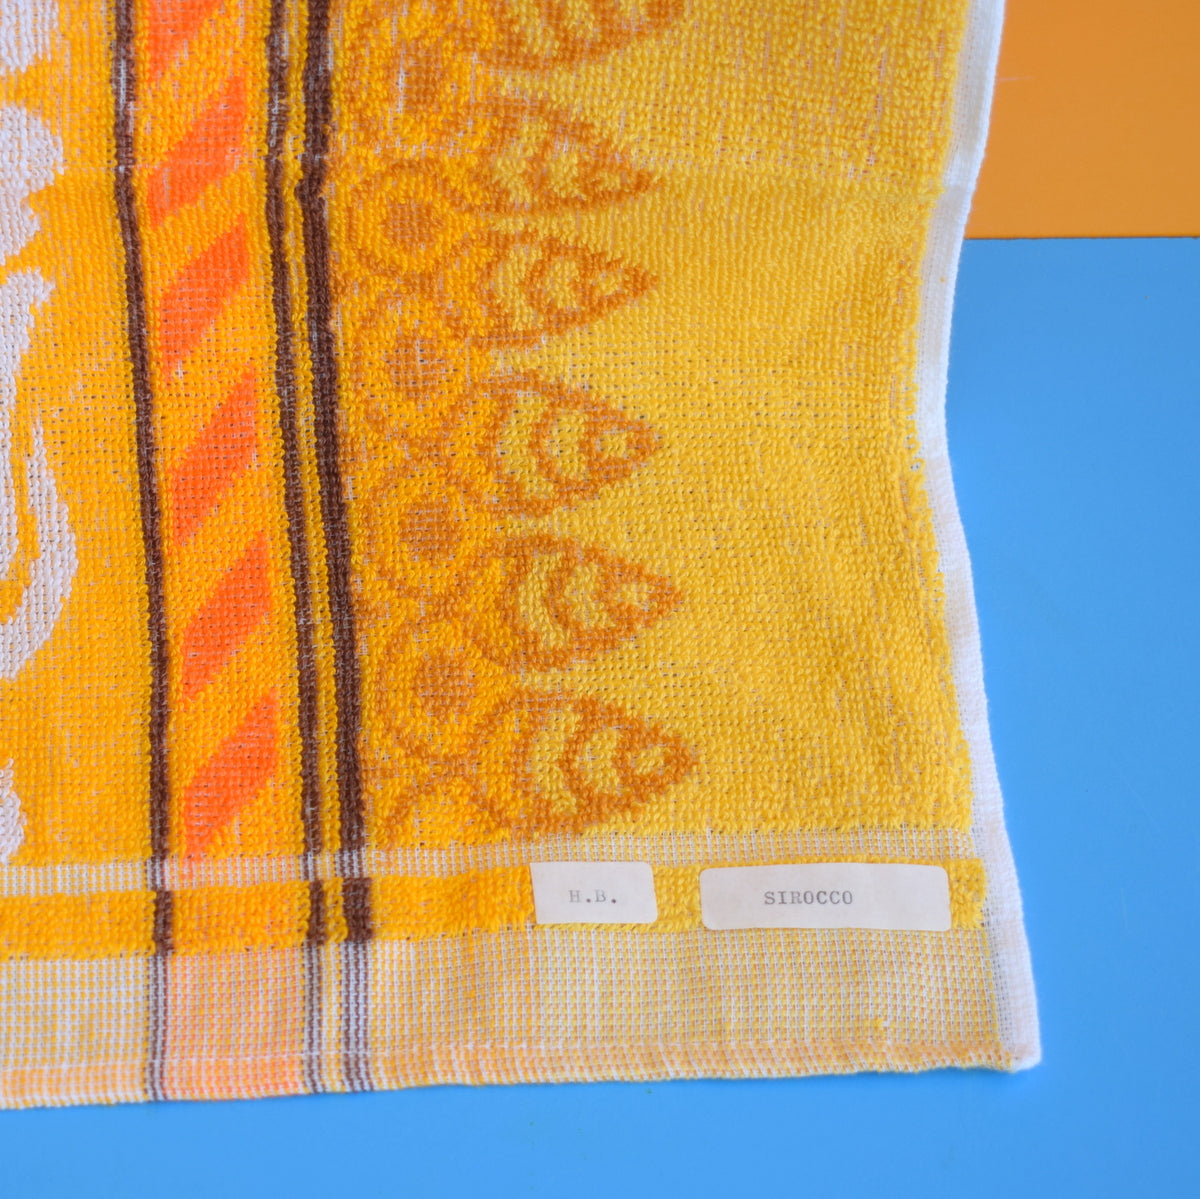 Vintage 1960s Cotton Bath Towel - Orange Patterned